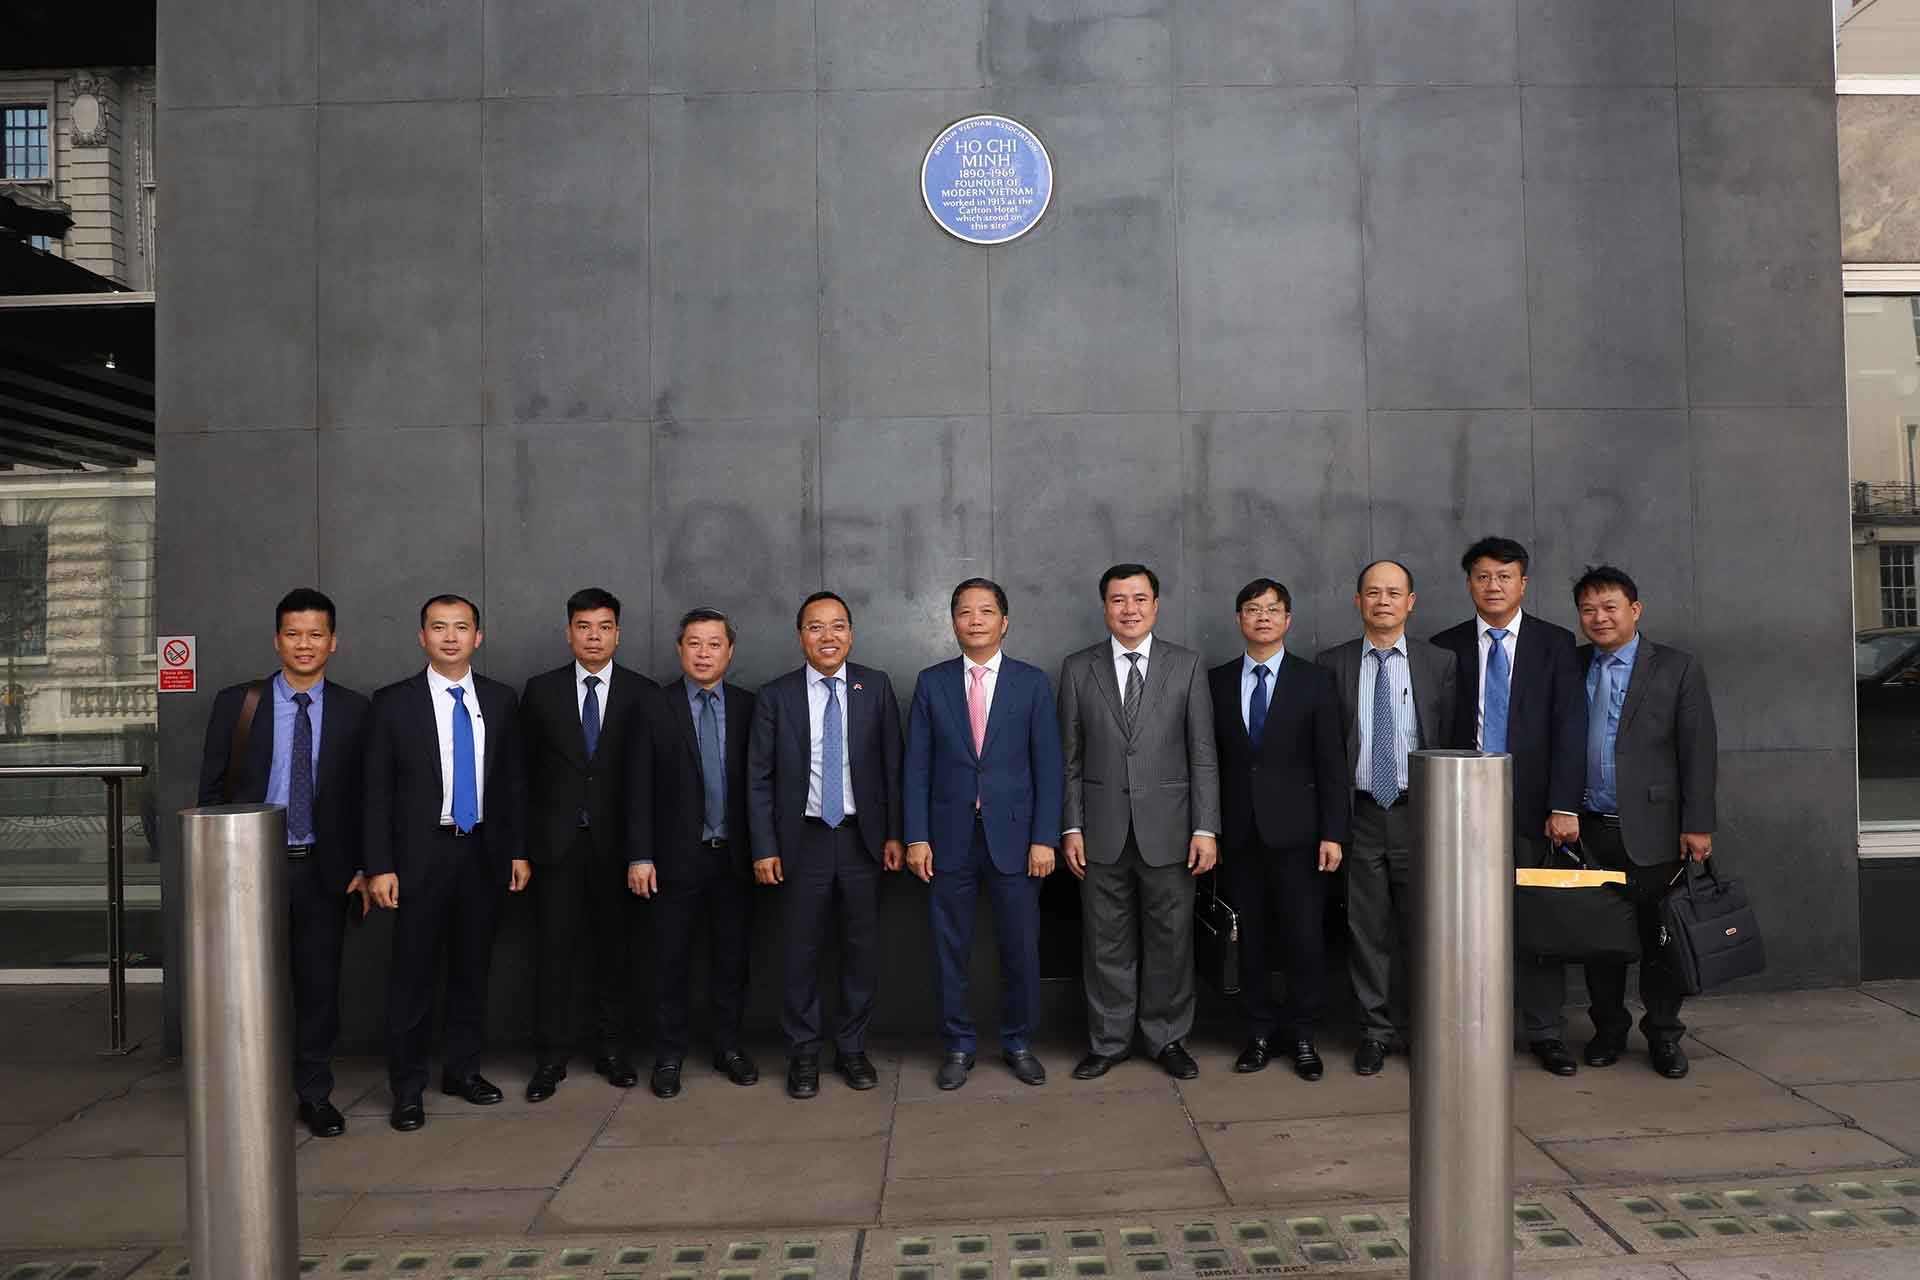 Trưởng Ban Kinh tế Trung ương Trần Tuấn Anh và đoàn công tác thăm Biển tưởng niệm Chủ tịch Hồ Chí Minh tại Tòa nhà New Zealand trên phố Hay Market ở thủ đô London. (Nguồn: TTXVN)